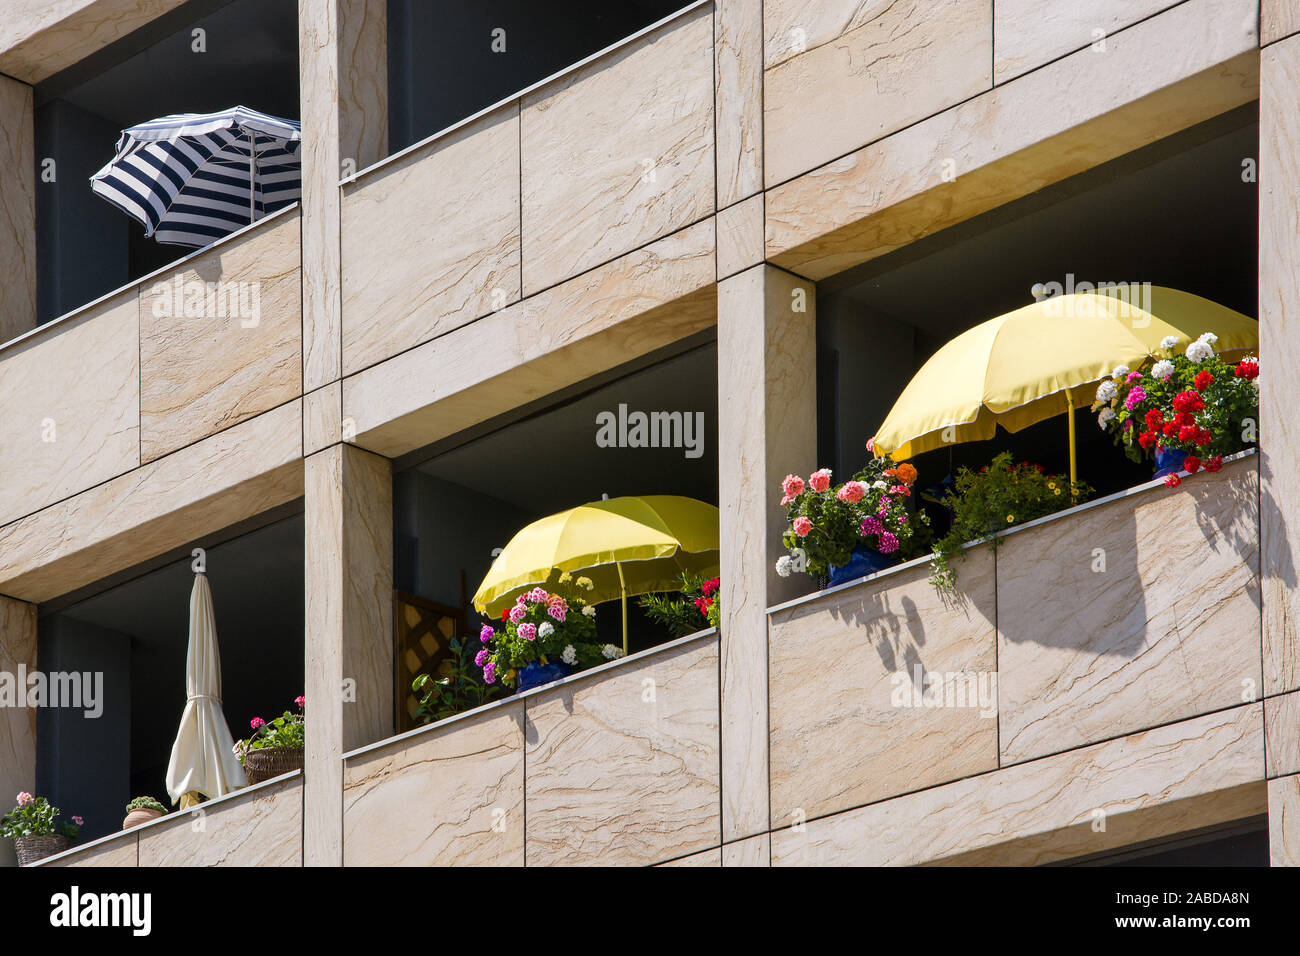 Urlaub auf Balkonien, Balkon mit Sonnenschirm Stock Photo